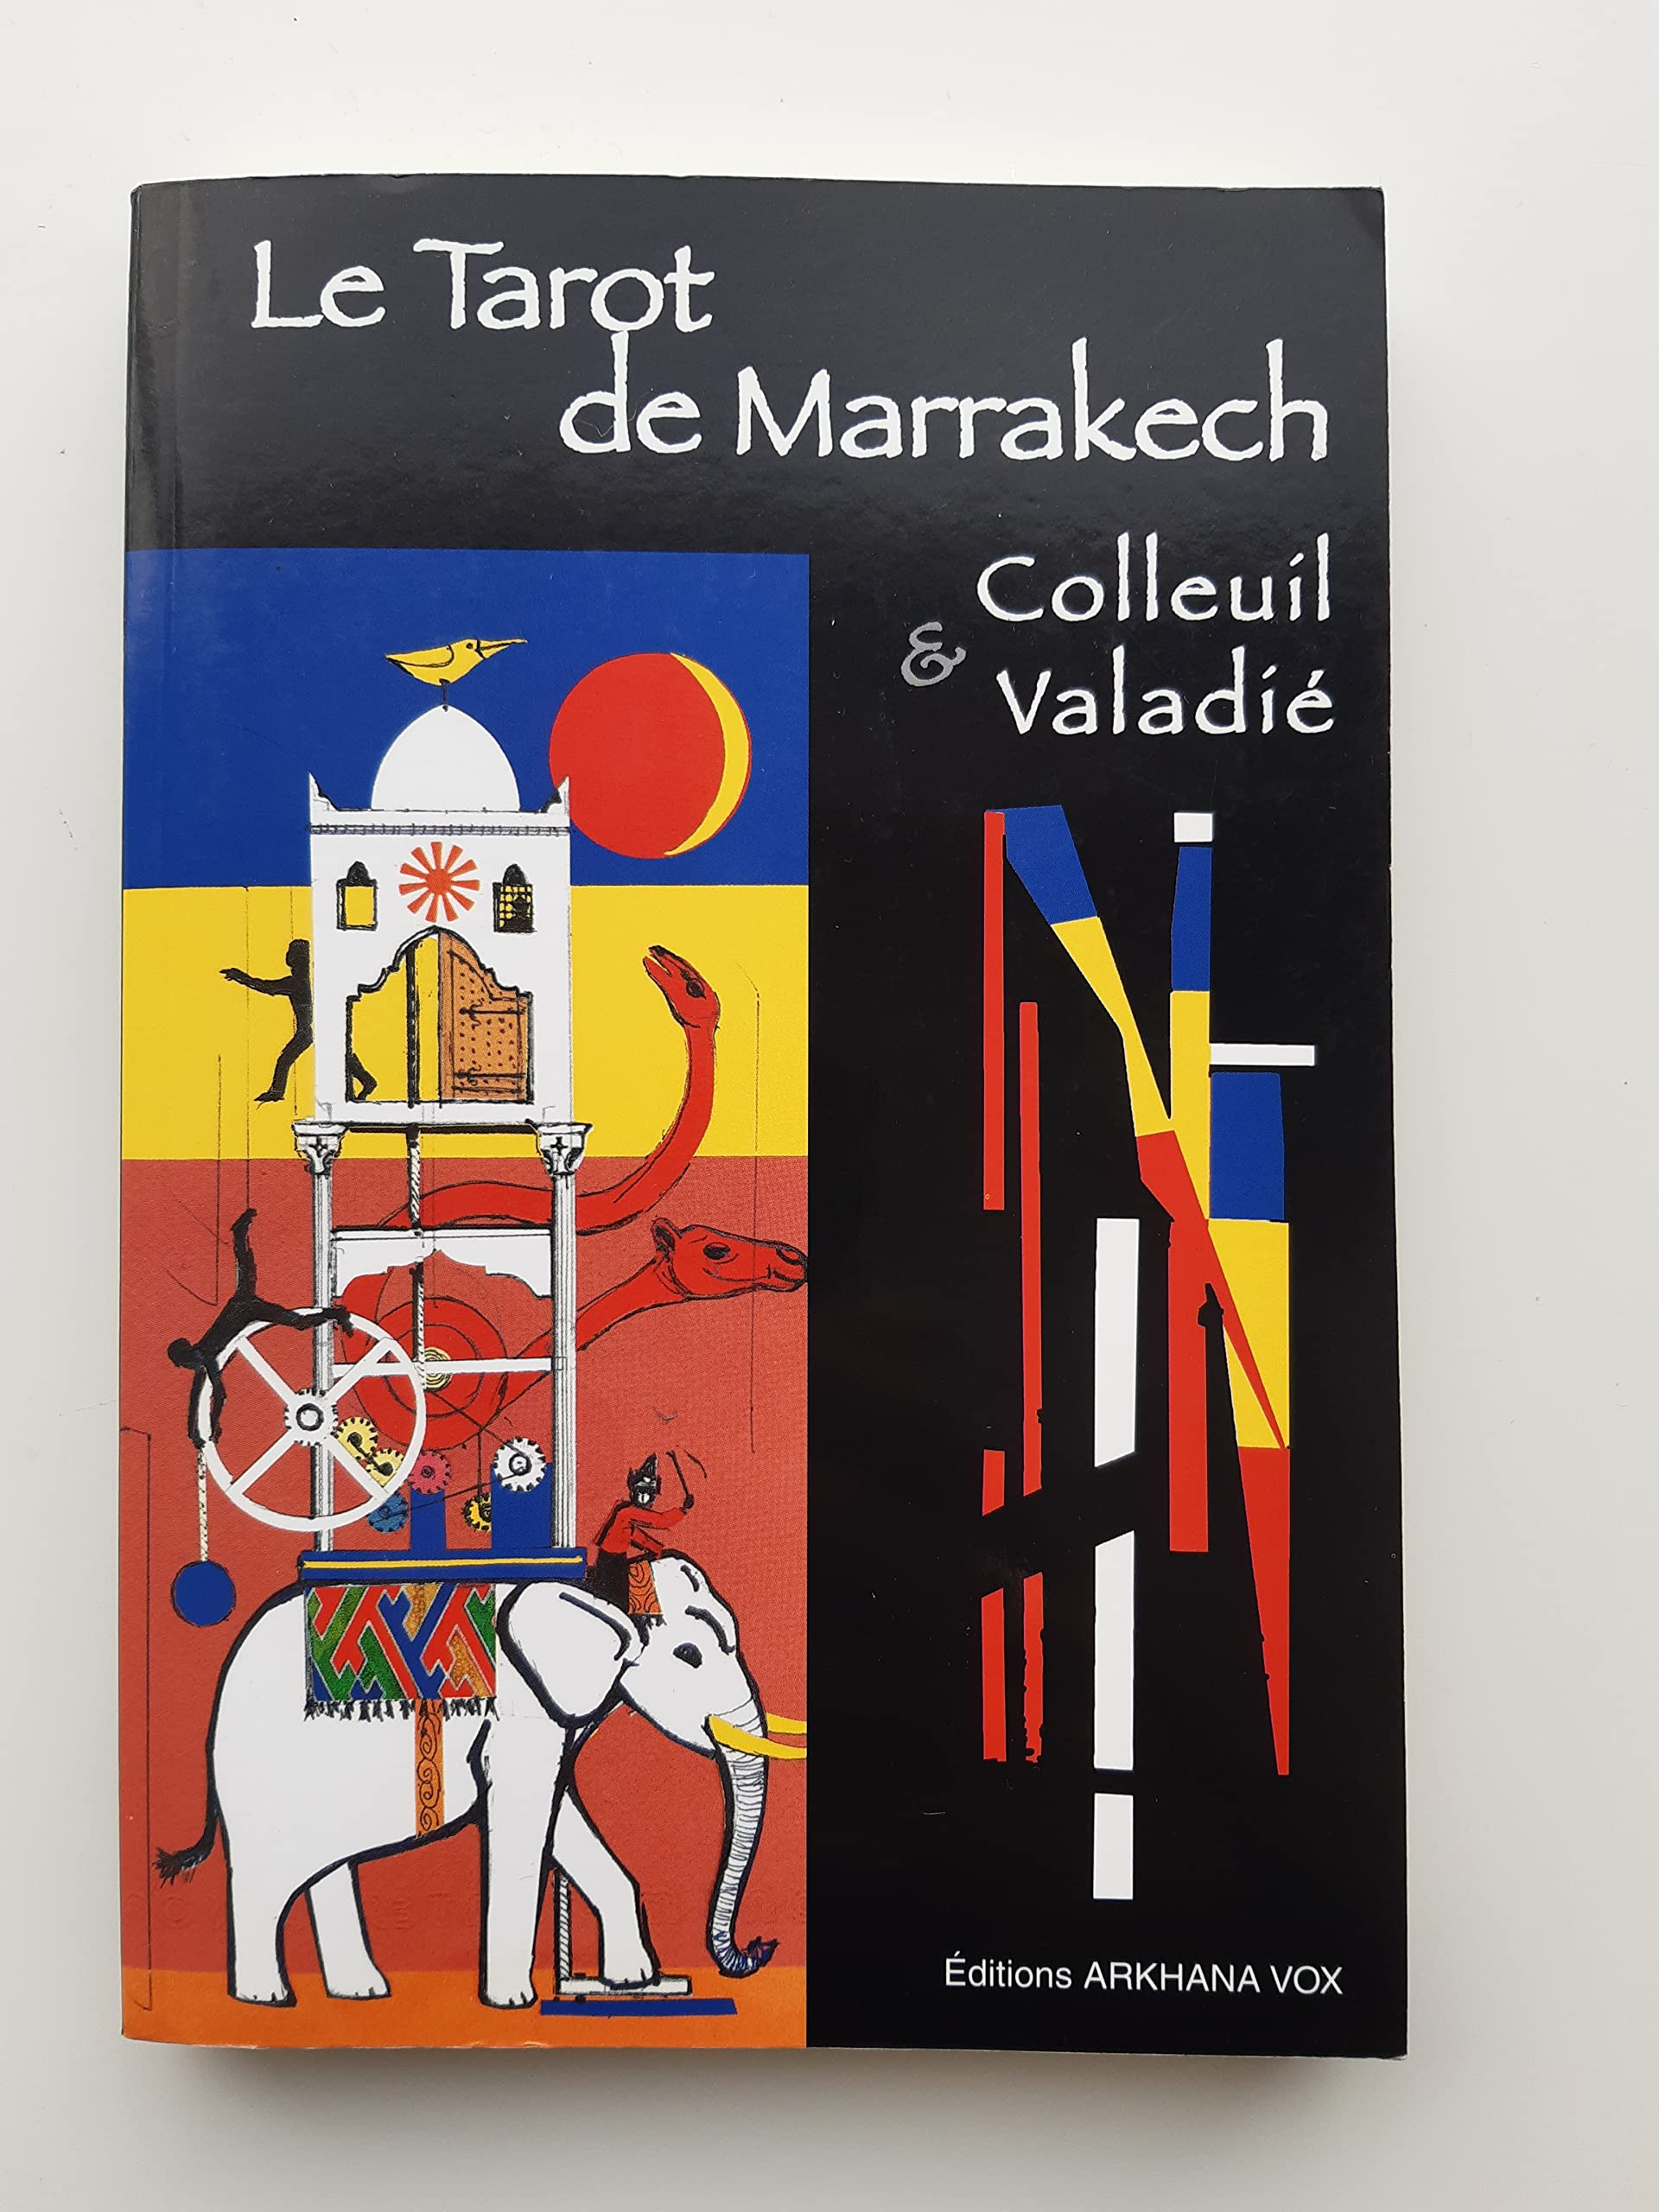 Le tarot de Marrakech : renaît de ses cendres...